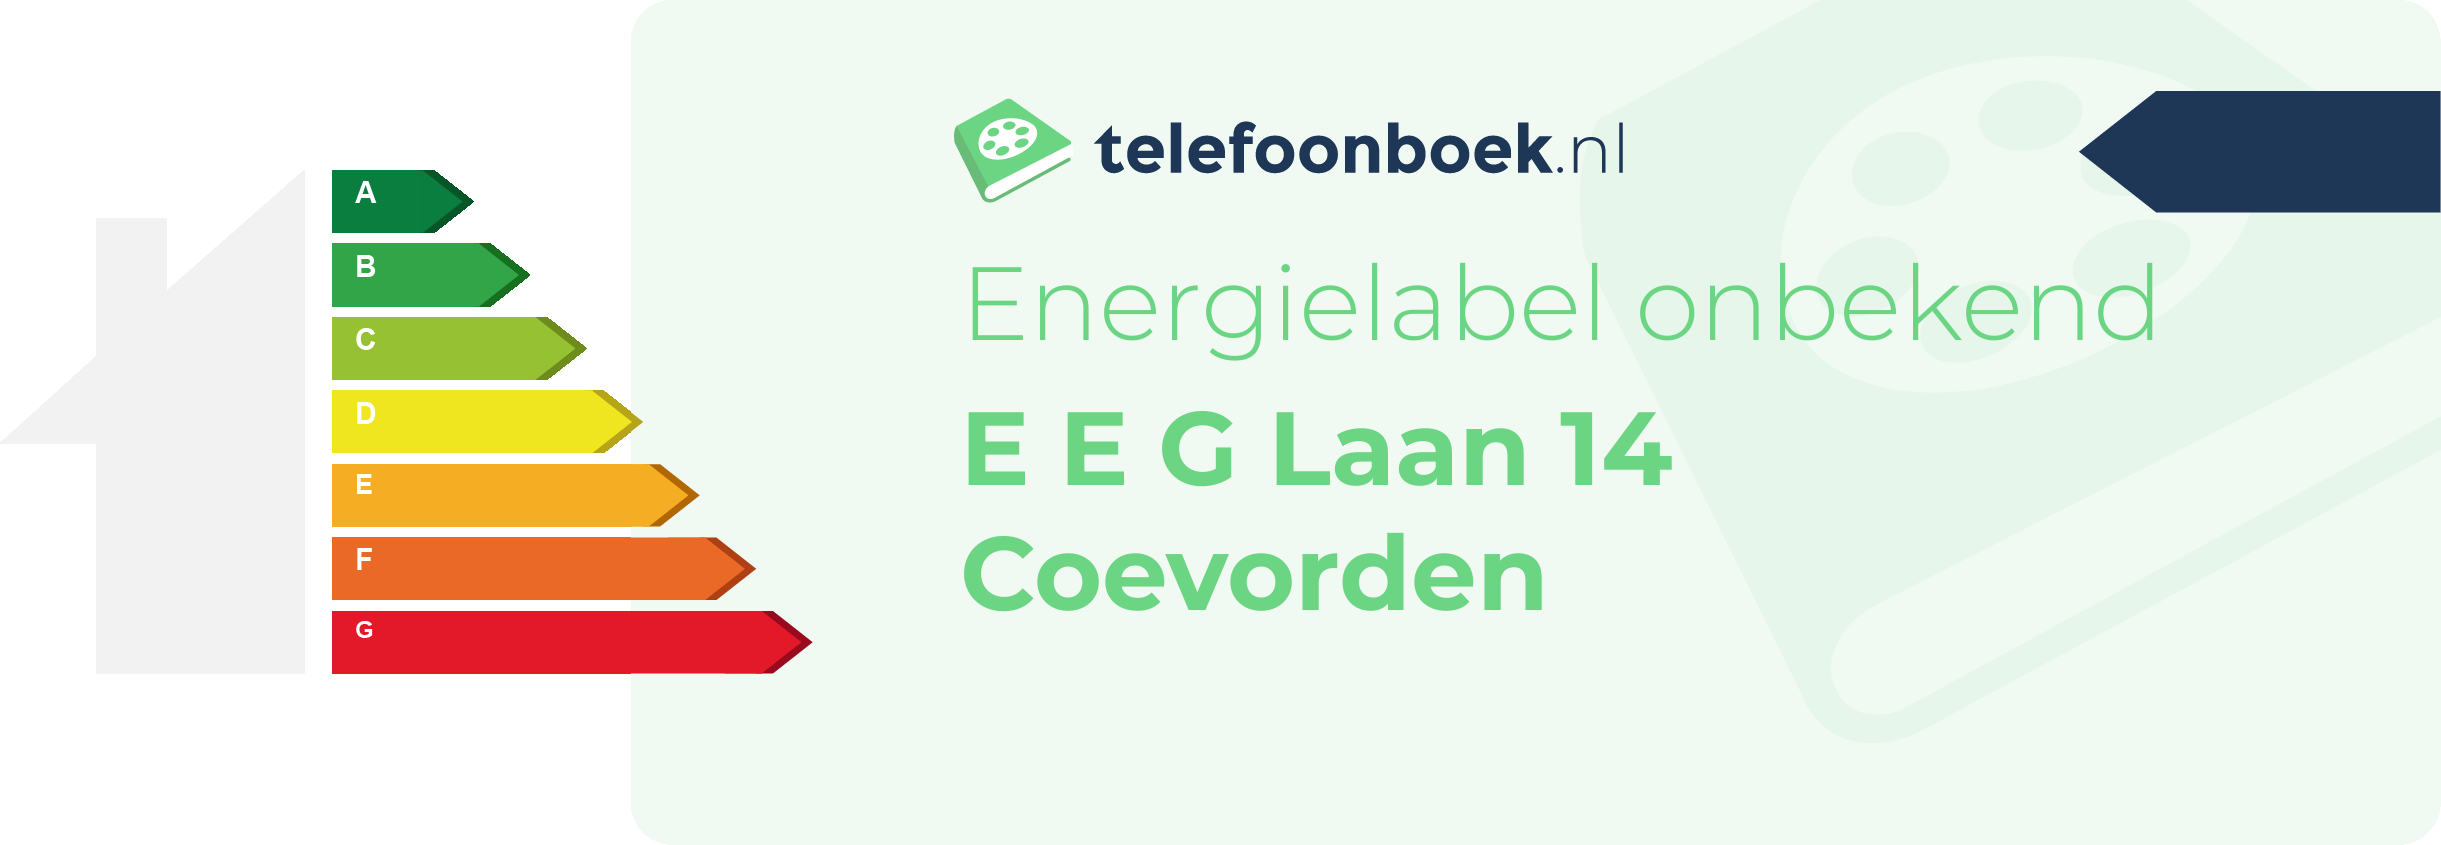 Energielabel E E G Laan 14 Coevorden